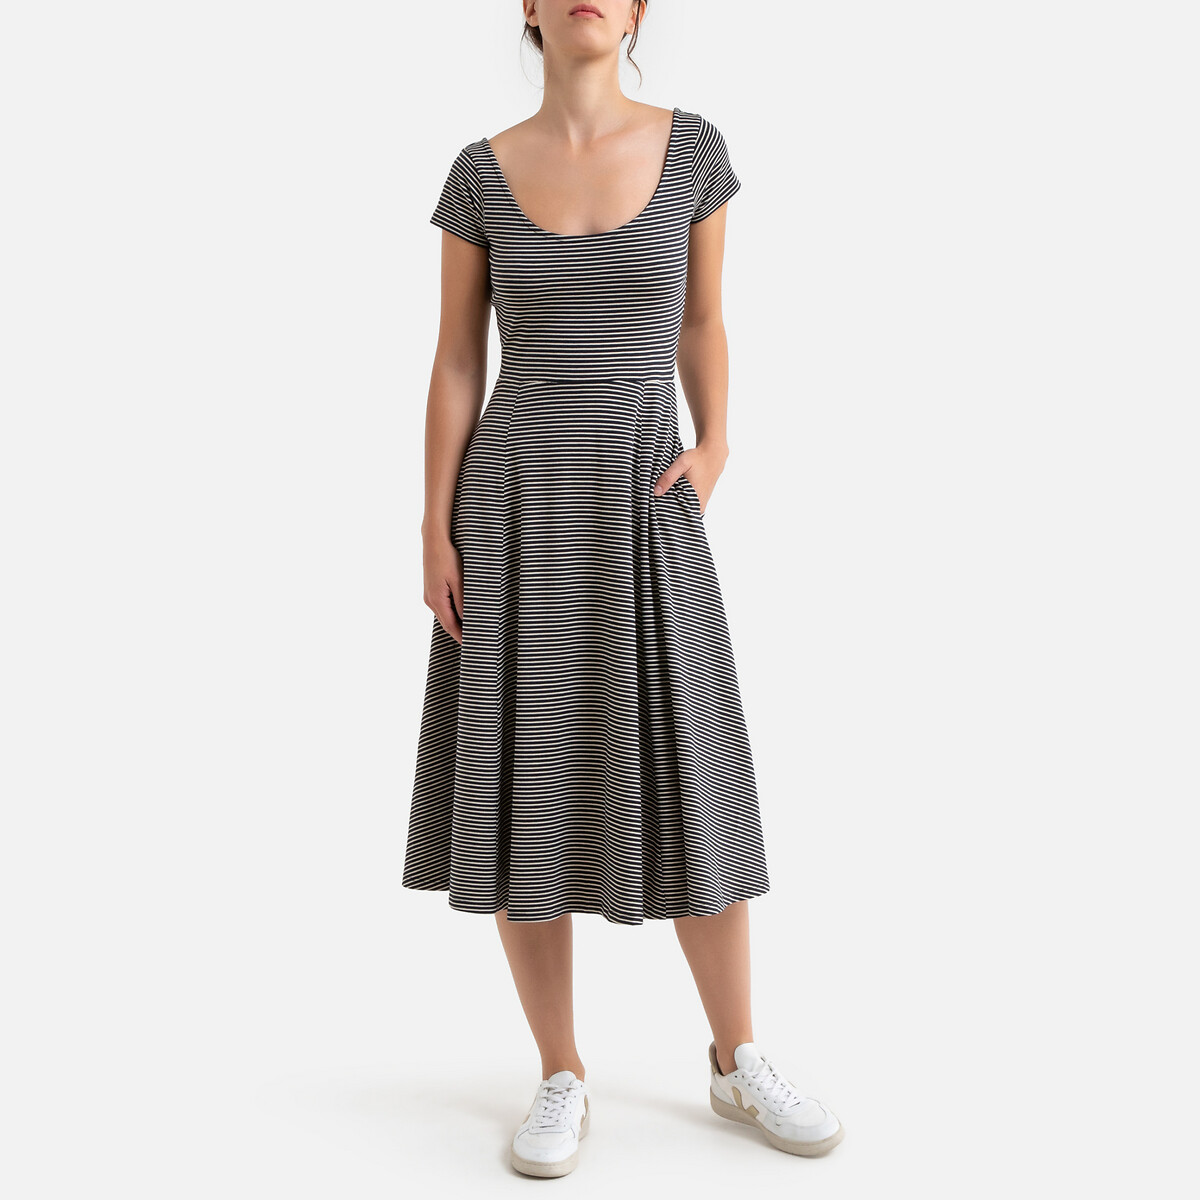 Платье La Redoute Длинное расклешенное в полоску с короткими рукавами L бежевый, размер L - фото 1